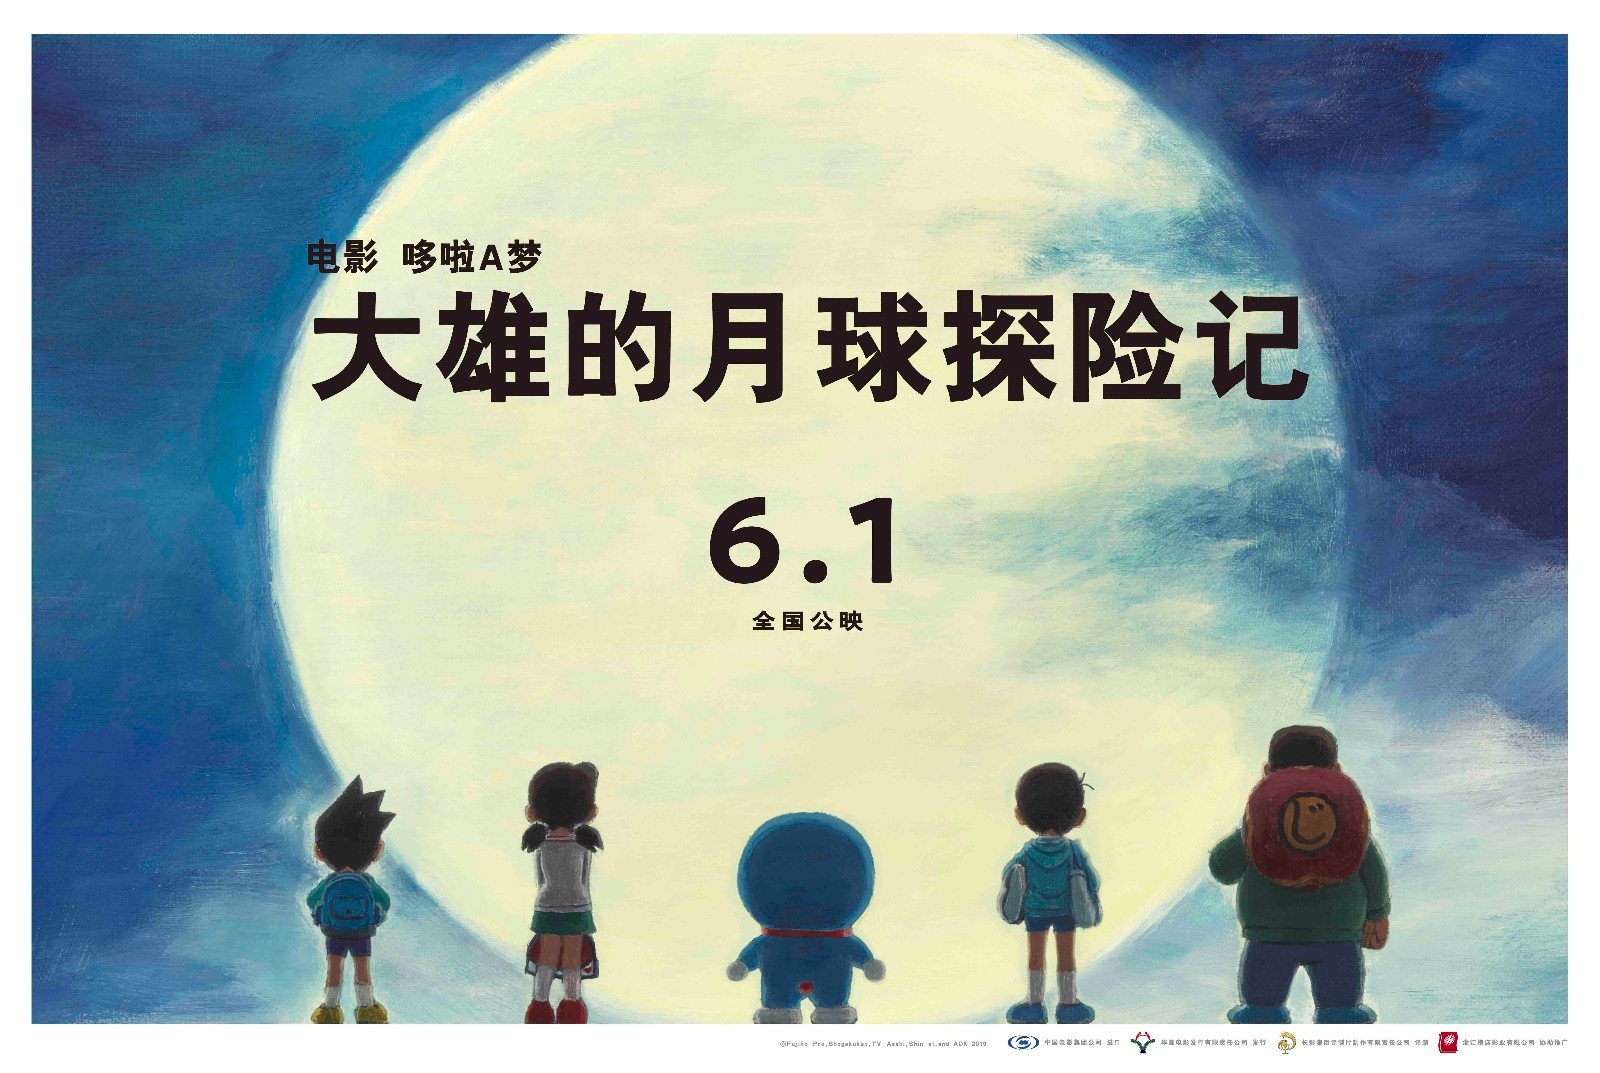 电影《哆啦A梦》剧场版曝“遥望月亮”版手绘海报